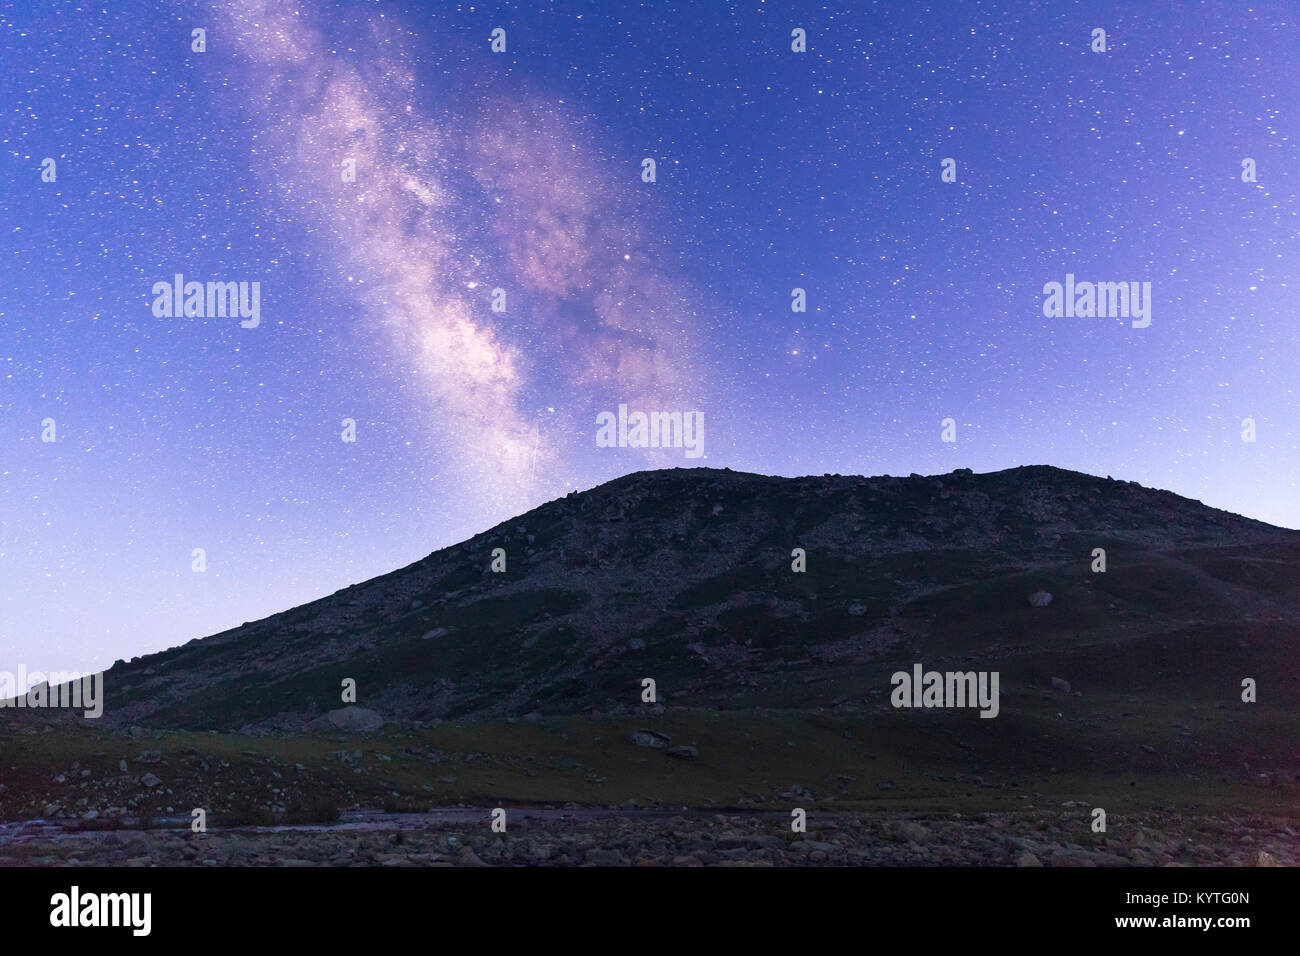 Les météores & Voie Lactée comme vu de Gangabal Camping sur les grands lacs du cachemire à Sonamarg trek, le Jammu-et-Cachemire, en Inde. Ciel plein d'étoiles Banque D'Images